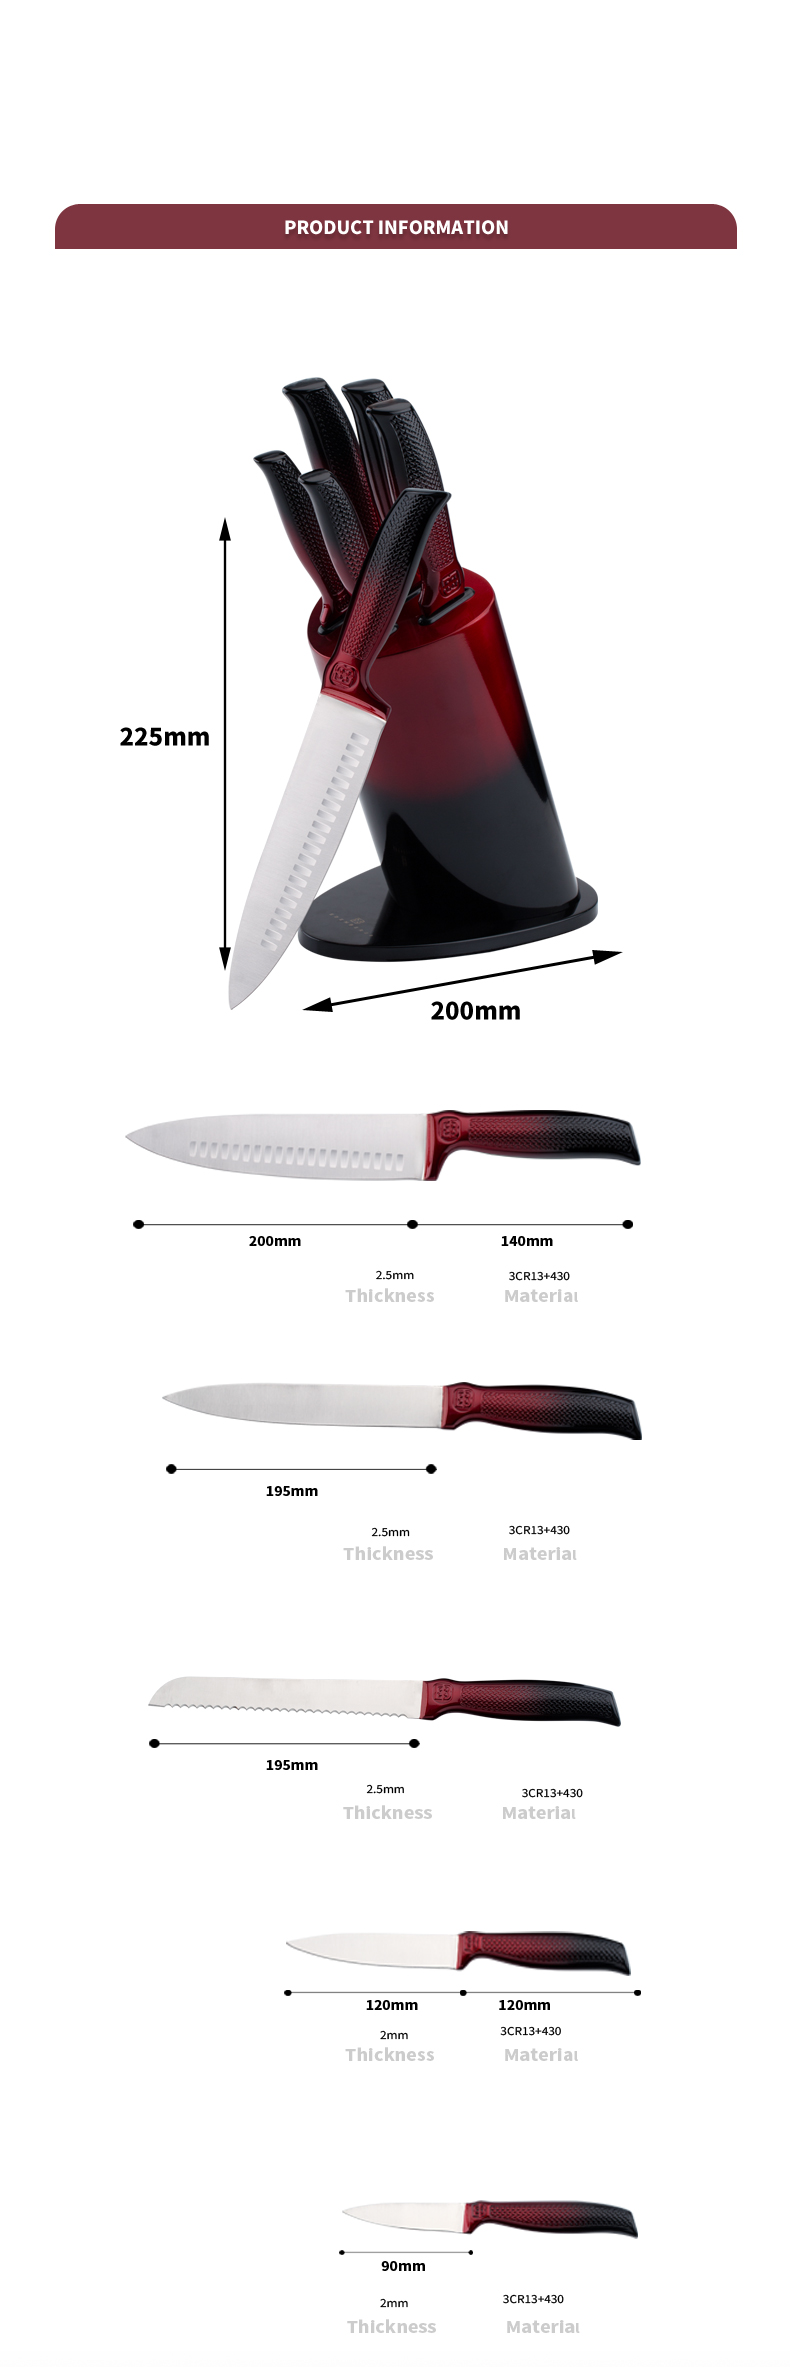 K129-tilpasset 5 stk 3cr13 rustfritt stål kjøkkenkniv kokkeknivsett med fargerik blokk-ZX | kjøkkenkniv, kjøkkenverktøy, silikonkakeform, skjærebrett, bakeverktøysett, kokkekniv, biffkniv, skjærekniv, verktøykniv, skjærekniv, knivblokk, knivstativ, Santoku-kniv, småbarnskniv, plastkniv, non-stick maling Kniv, fargerik kniv, rustfri stålkniv, boksåpner, flaskeåpner, tesil, rivjern, eggvisper, kjøkkenverktøy i nylon, kjøkkenverktøy i silikon, cookie cutter, kokeknivsett, knivsliper, skreller, kakekniv, ostekniv, pizza Kniv, silikon spatel, silikonskje, mattang, smidd kniv, kjøkkensaks, kakebakekniver, kokekniver for barn, utskjæringskniv